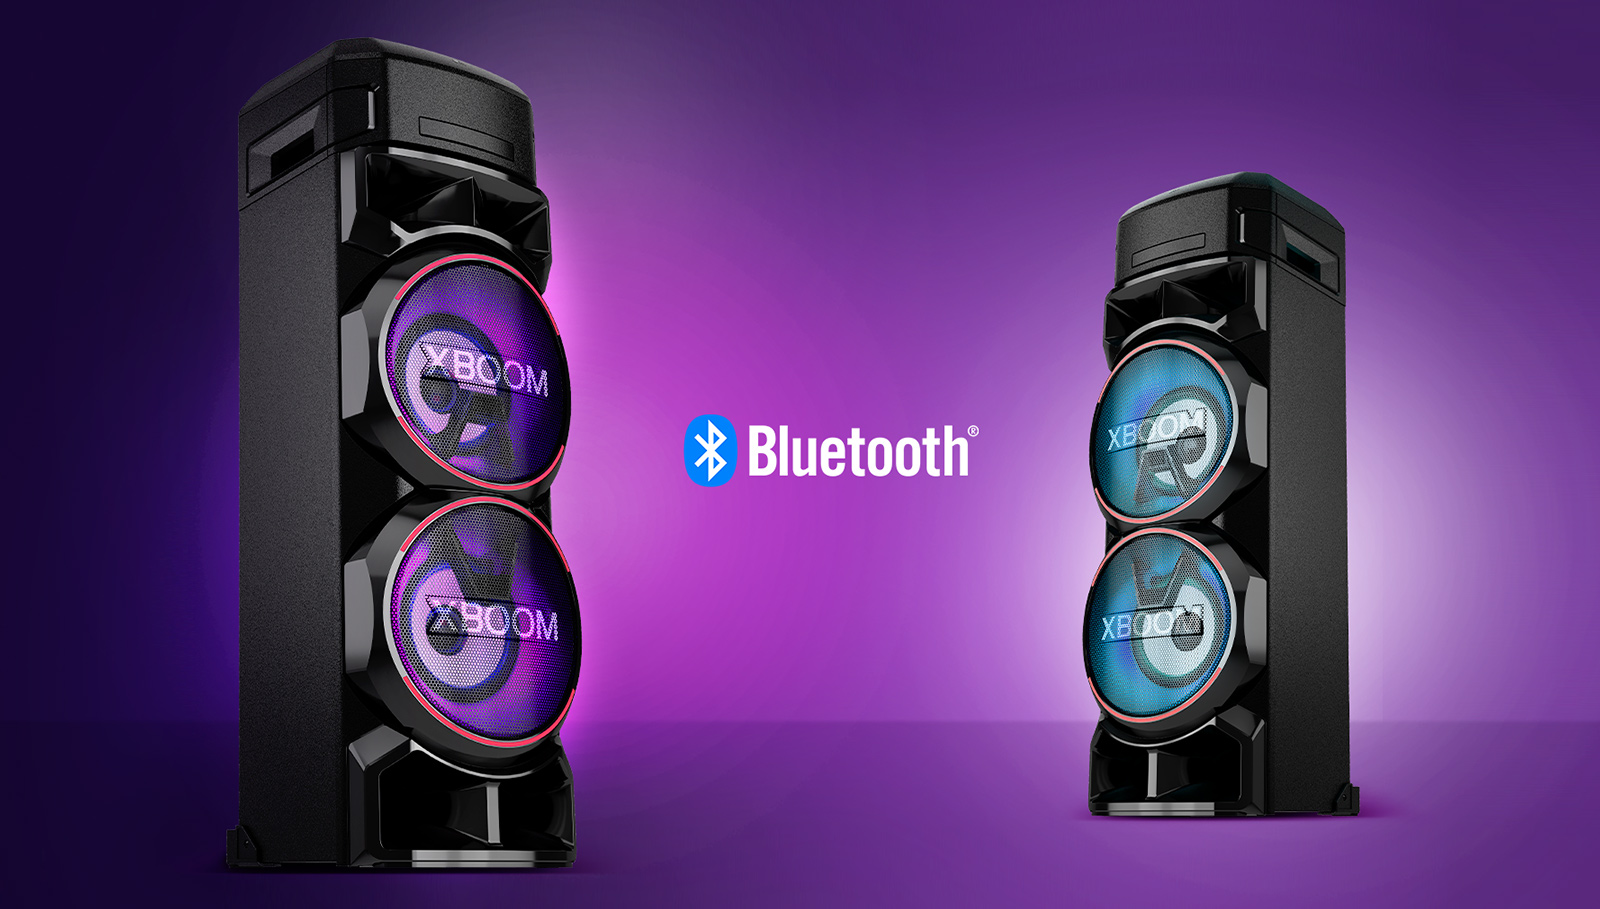 Dva LG XBOOM naproti sobě v šikmých úhlech proti fialovému pozadí s logem Bluetooth mezi nimi.